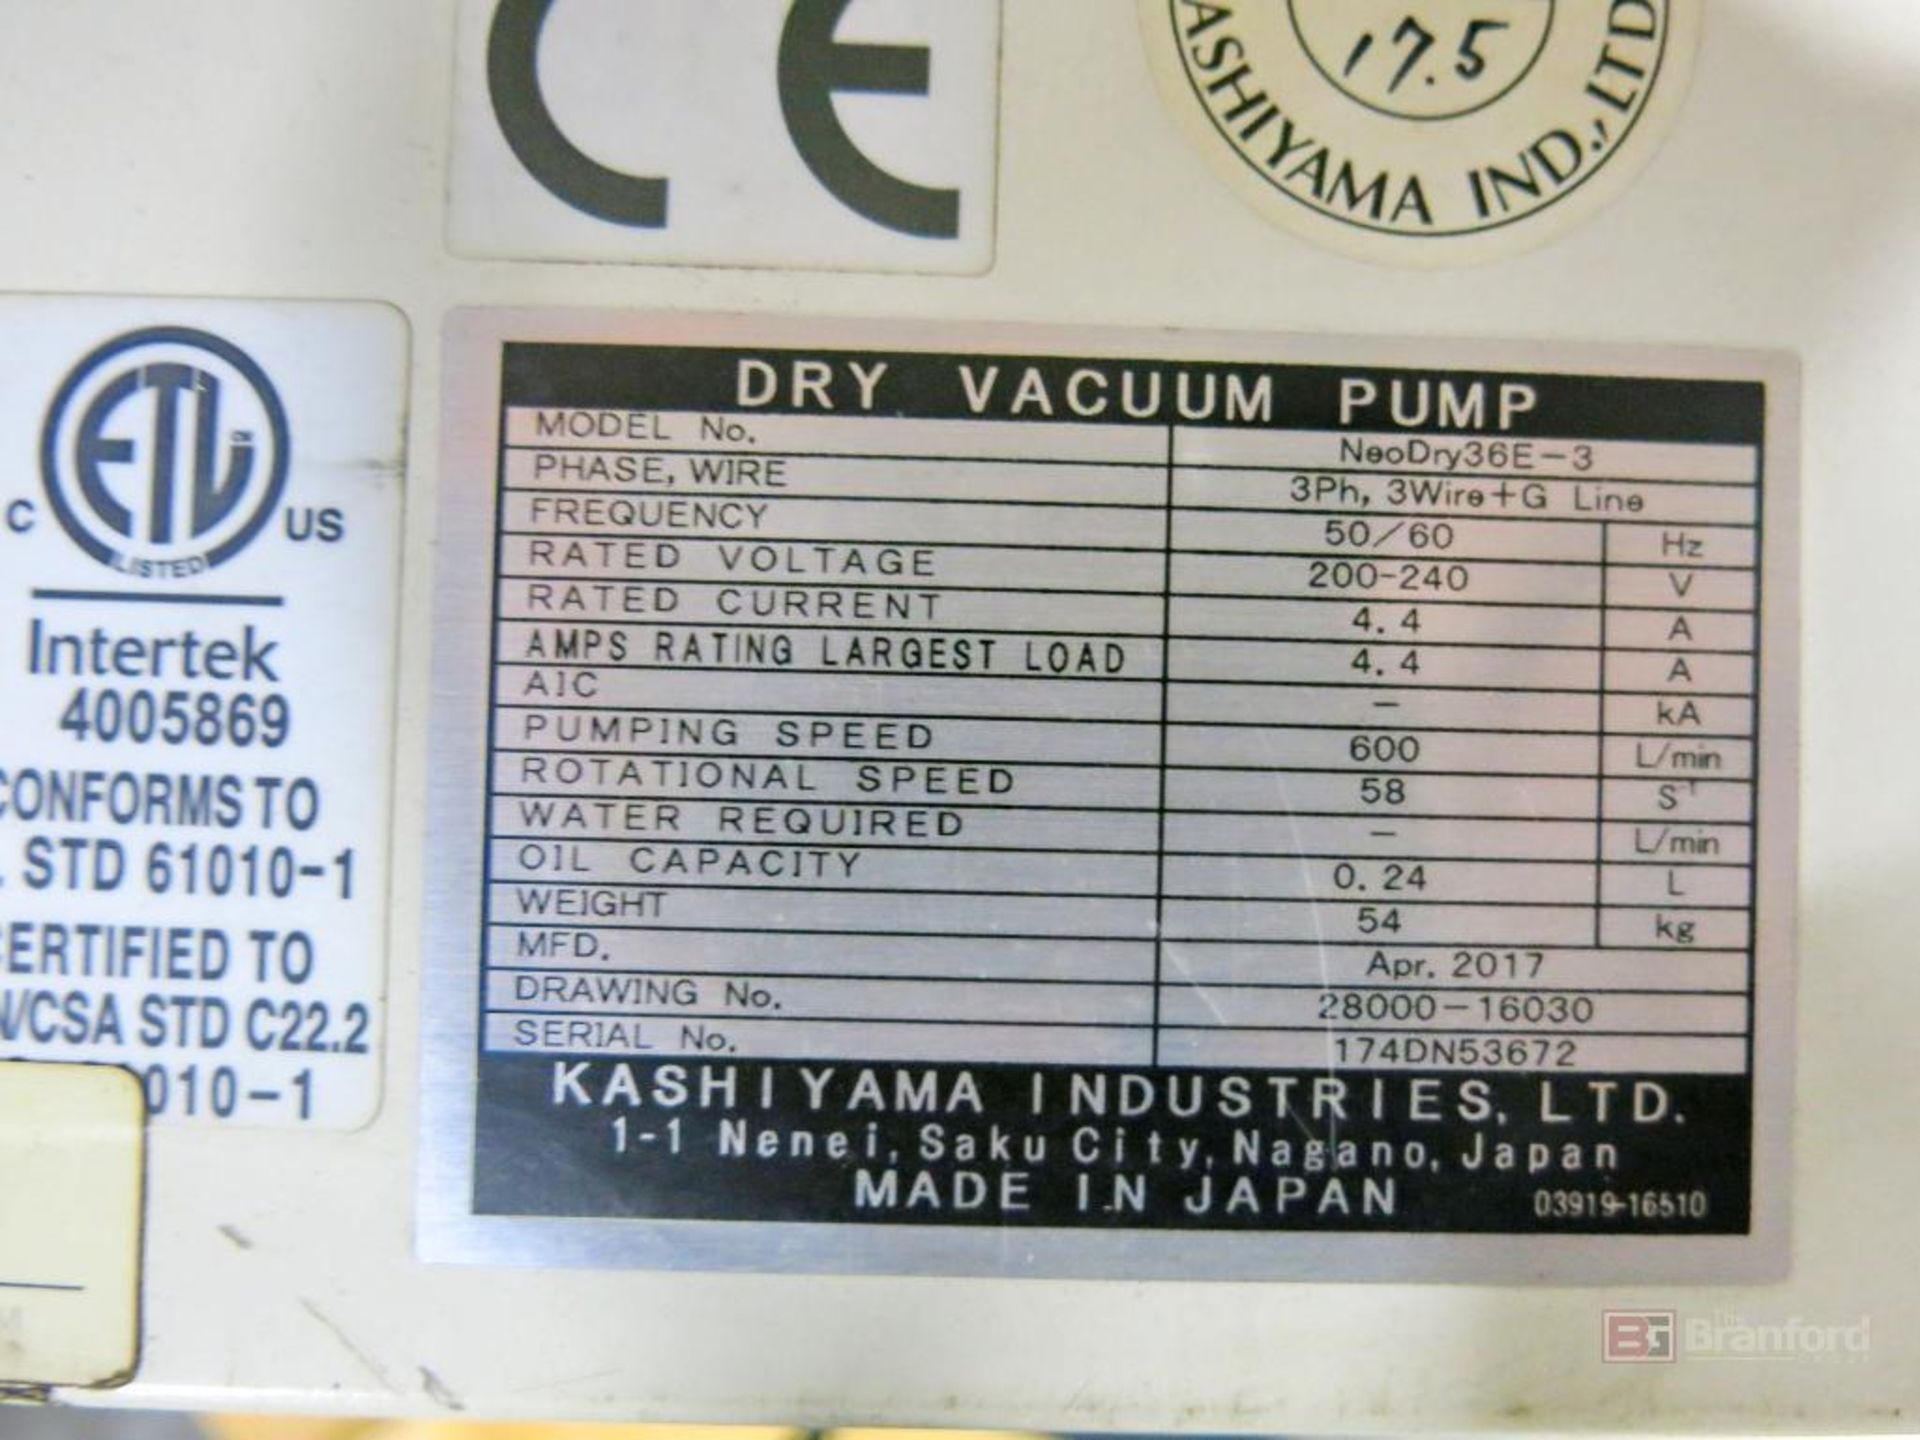 Lot of (2) Kashiyama Neodry 36E Dry Vacuum Pumps - Image 2 of 3